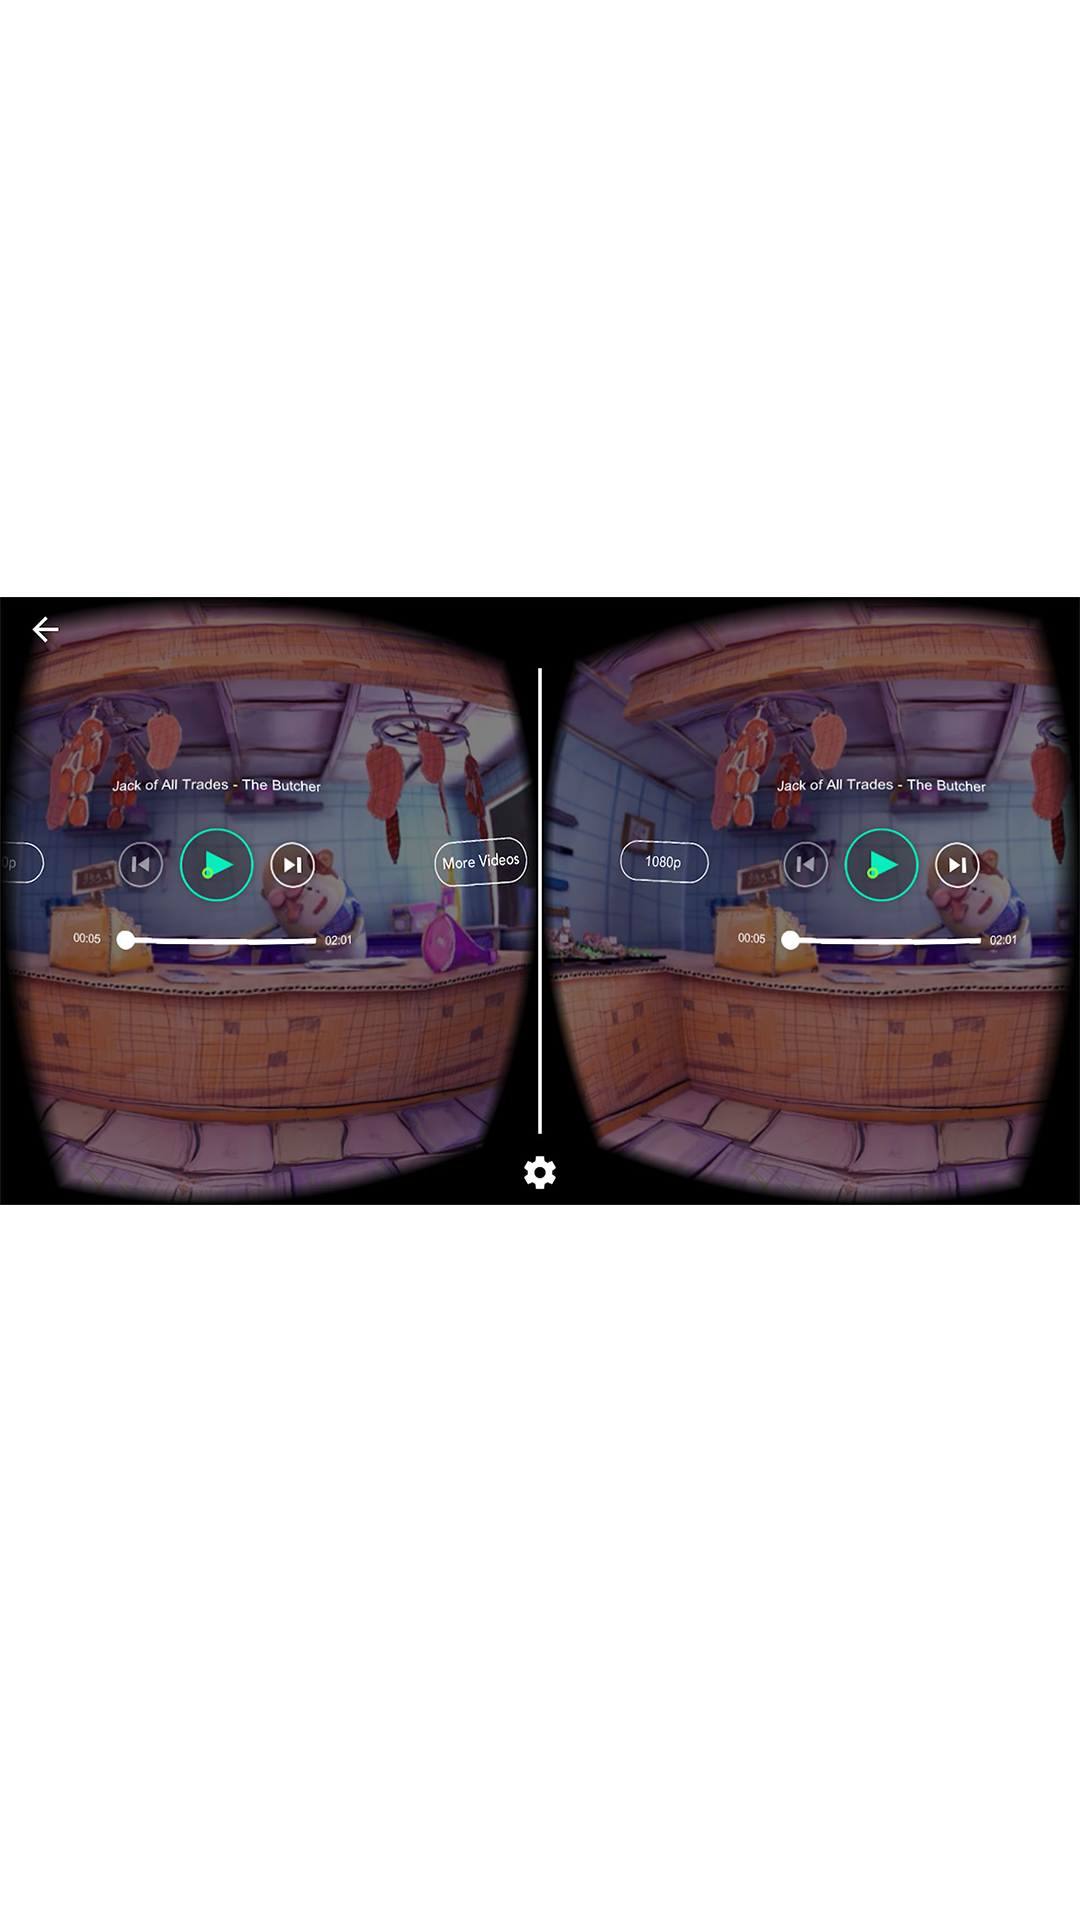 VR Video World